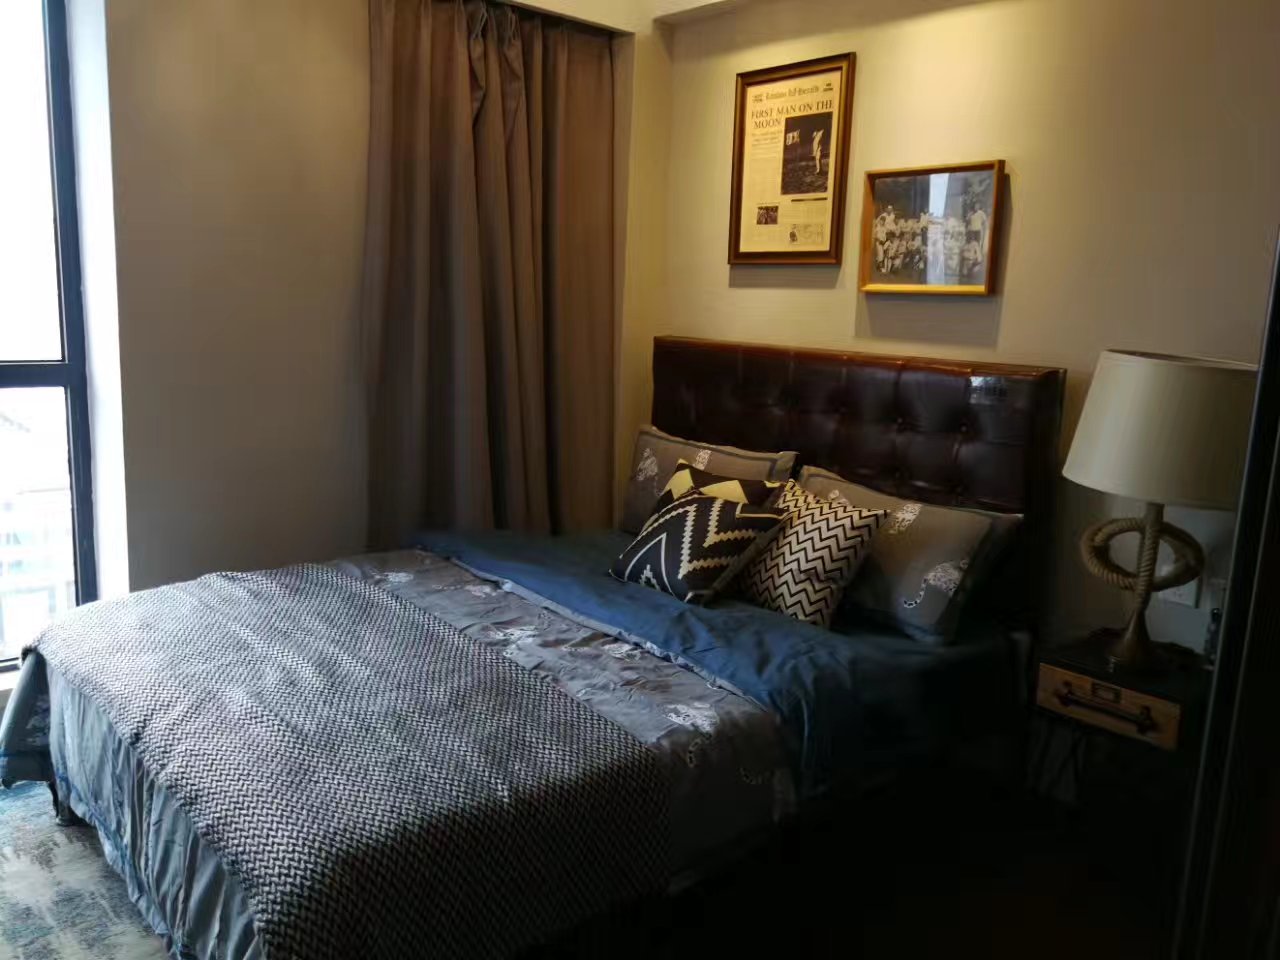 灰蓝色卧室床品让居室空间更为沉静，床尾小阳台借助采光，让卧室空间更为通透明亮。